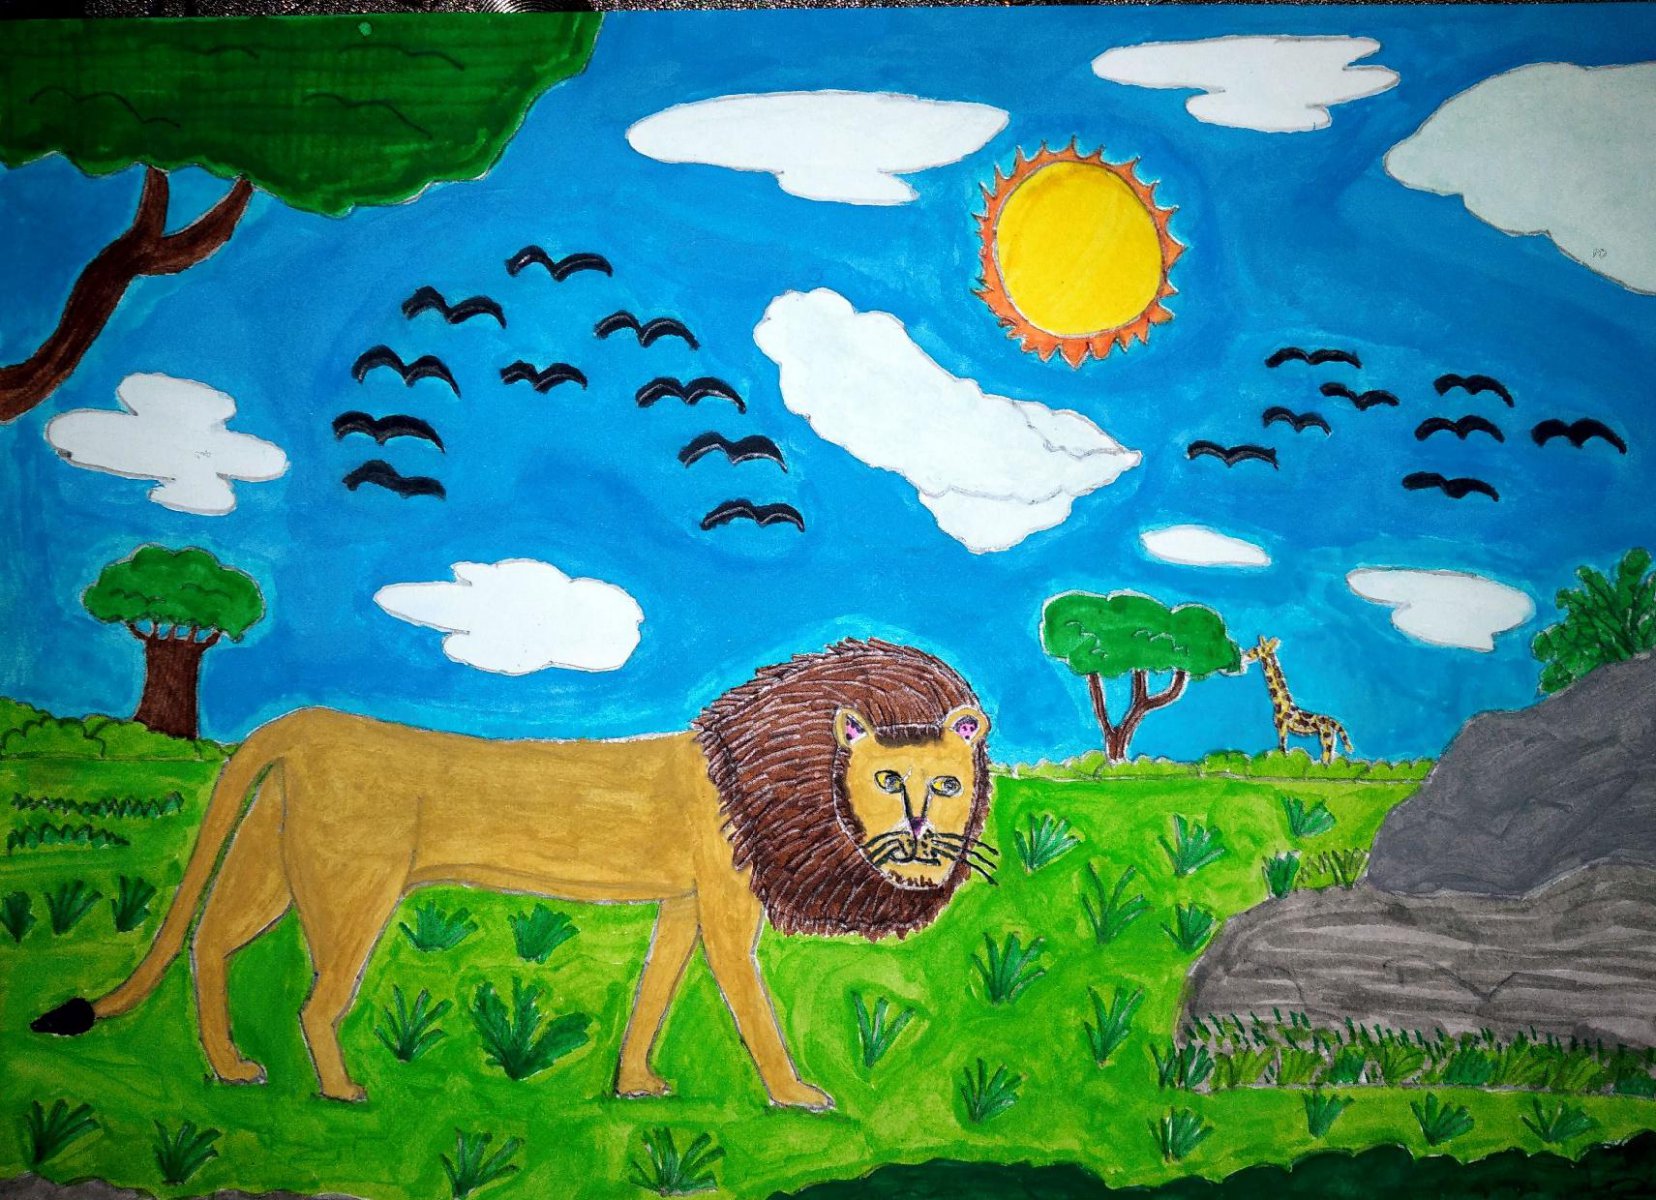 
AFRIICAN LION - JOHN ( JOHN ART Gallery 2019).